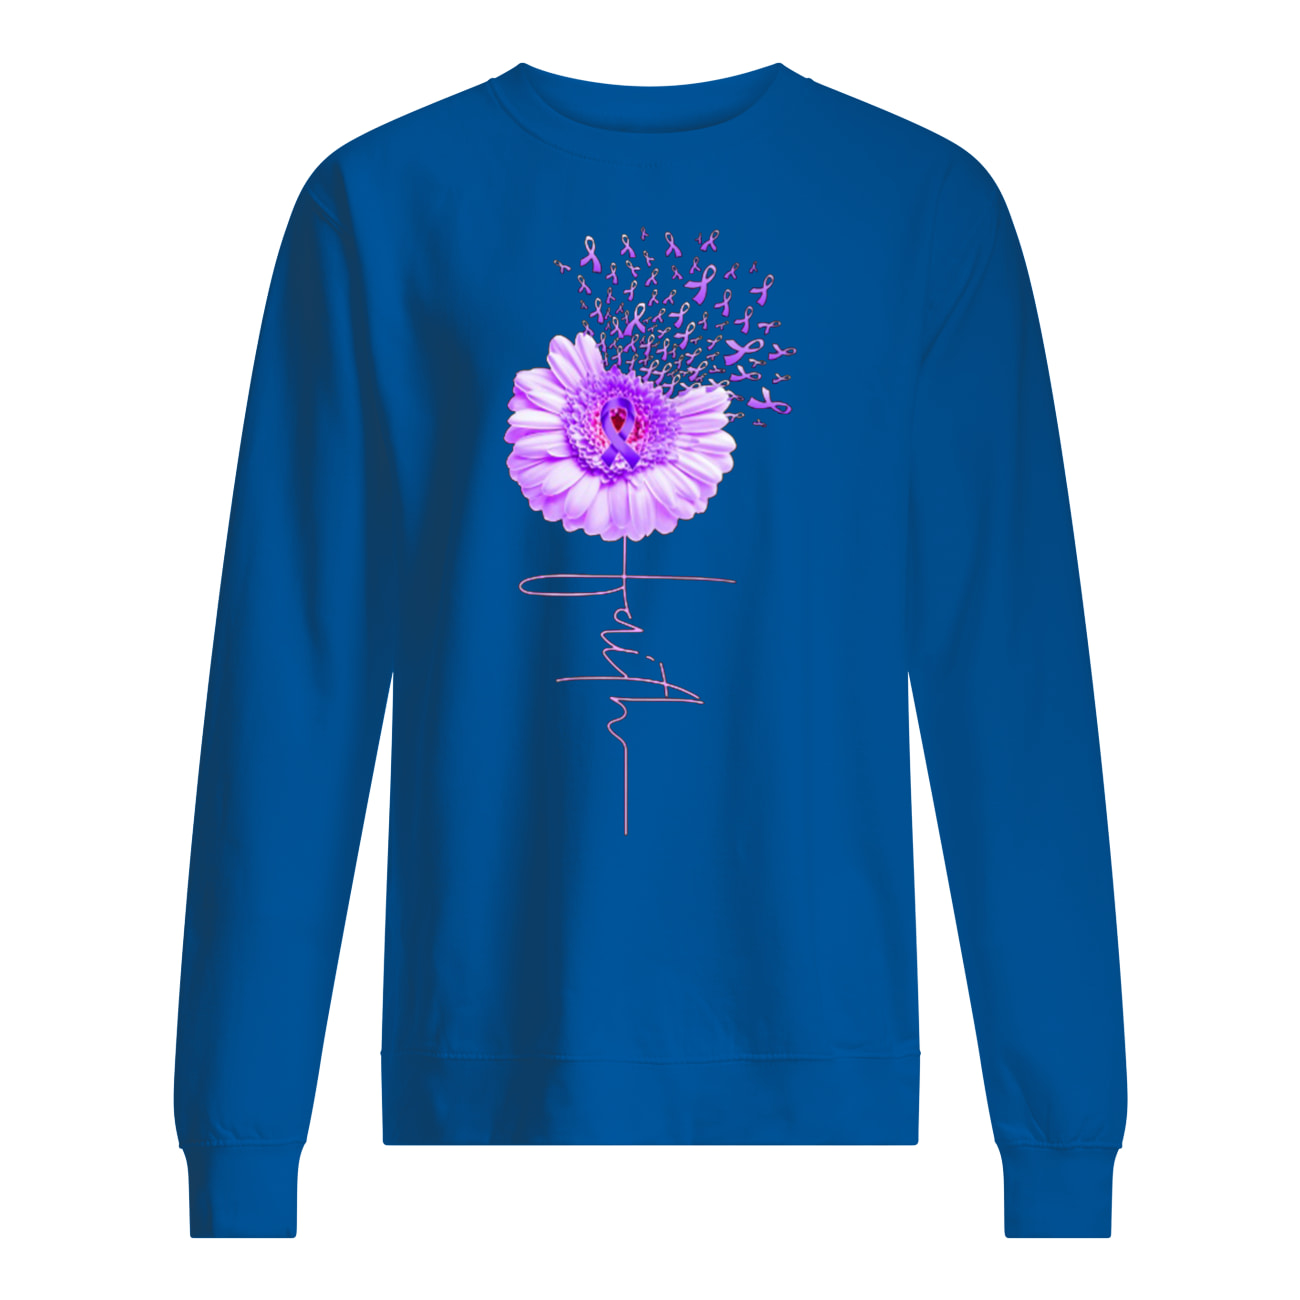 Daisy flower faith alzheimer's awareness sweatshirt